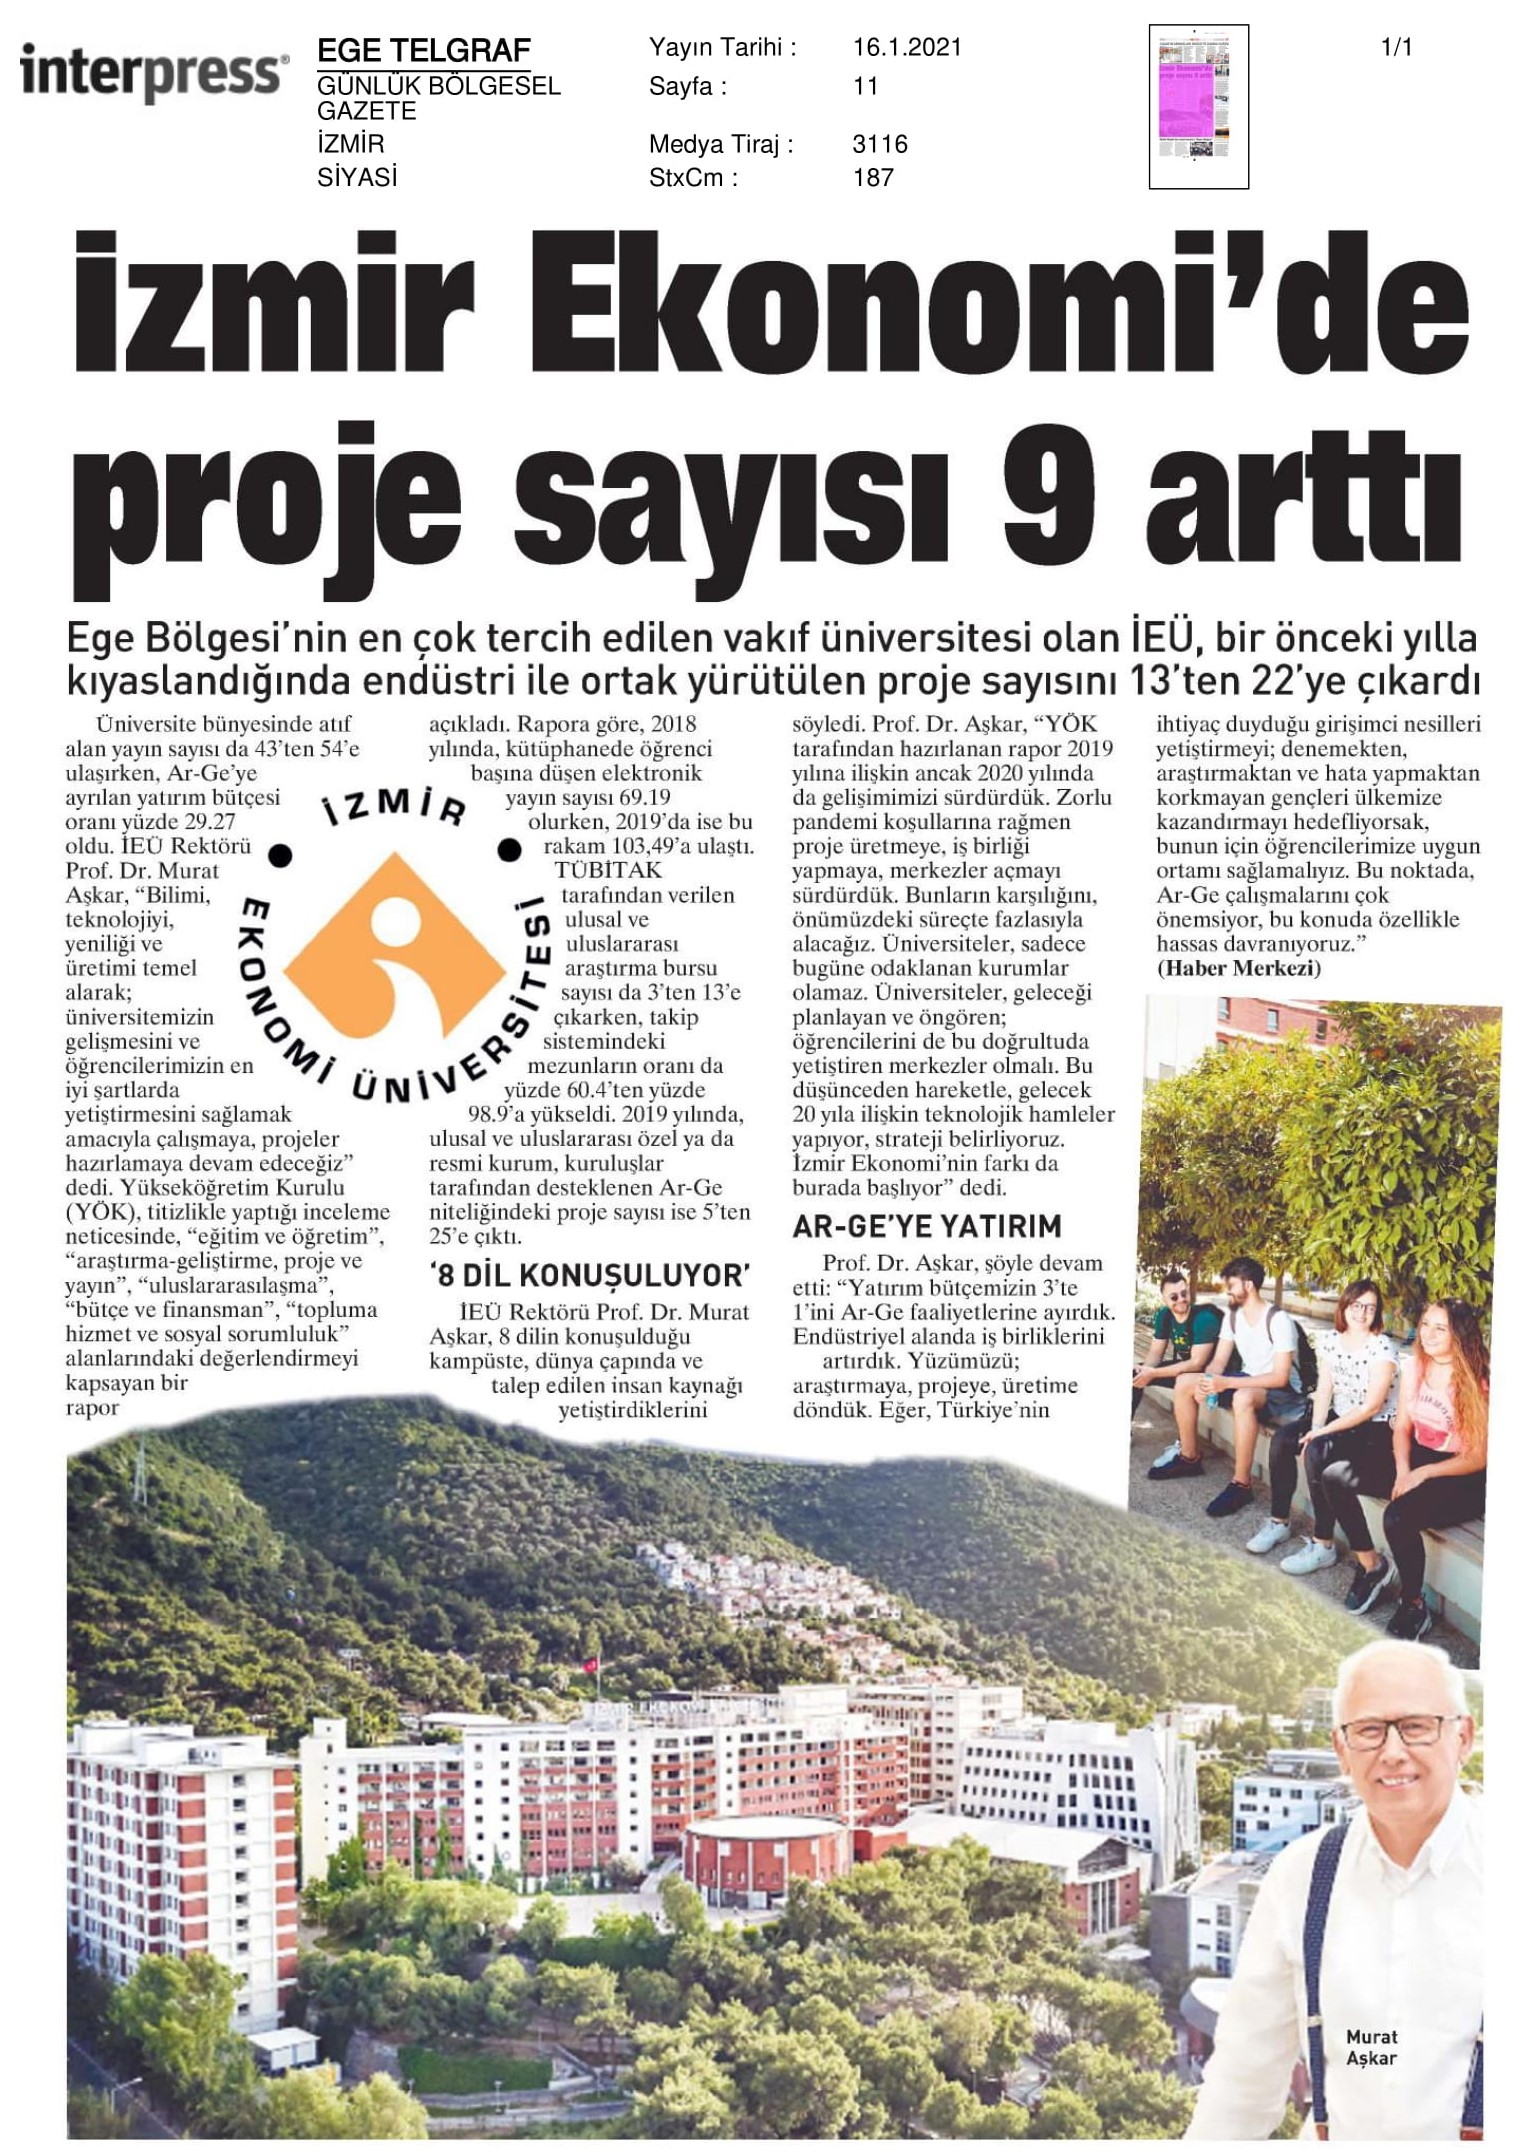 İzmir Ekonomi’de Ar-Ge ve proje çağı